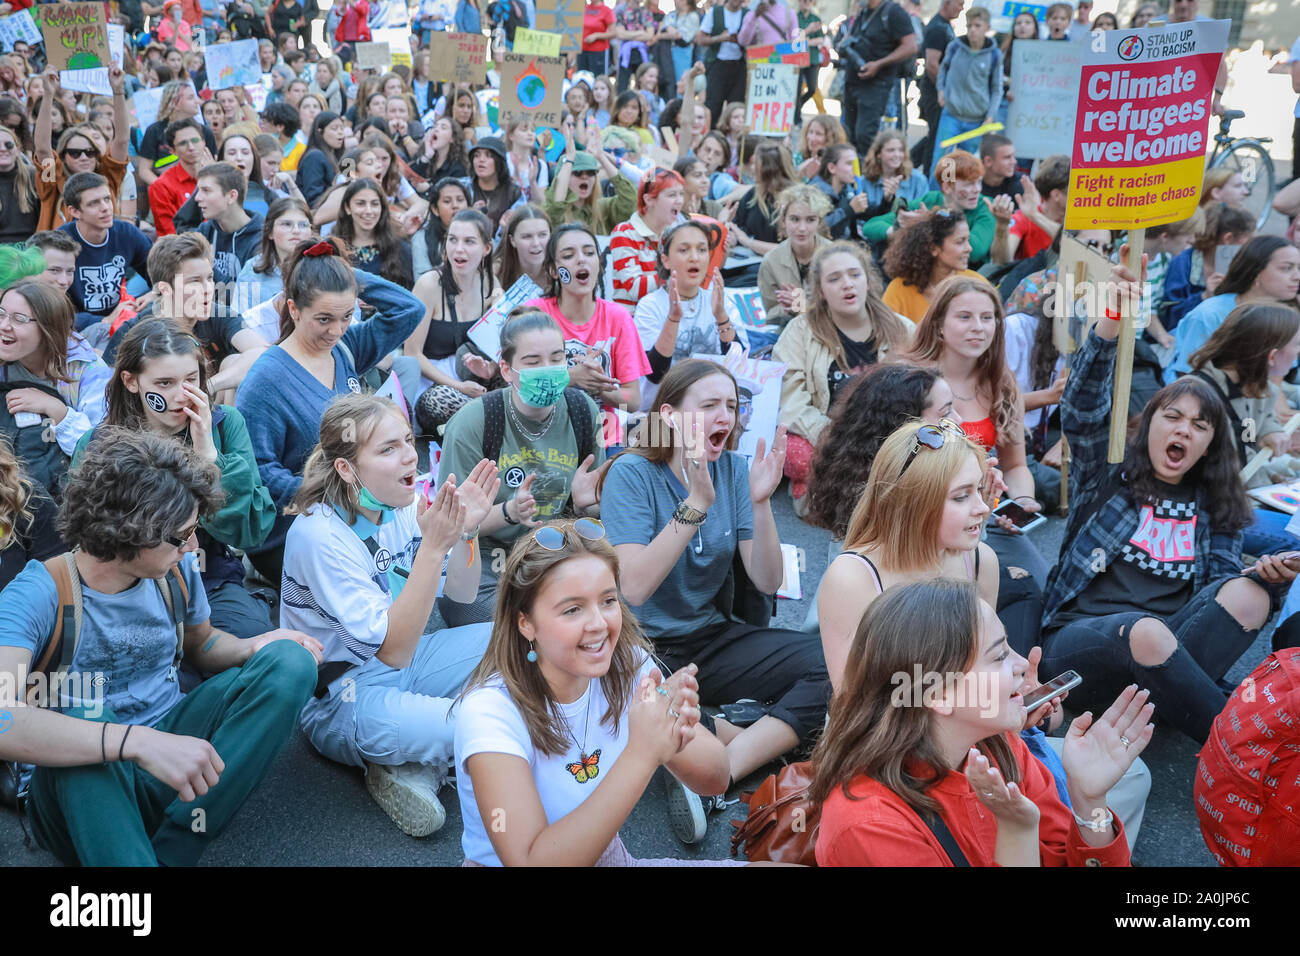 Westminster, Londra, Regno Unito, 20 settembre 2019. Manifestanti stadio a sedersi cadano al di fuori di Downing Street. Come il pomeriggio progredisce, manifestanti fanno la loro strada verso il basso di Whitehall, e verso Trafalgar Square. Decine di migliaia di bambini, giovani e adulti protestare per azione per il clima e contro le cause del cambiamento climatico nella capitale britannica. Molte simili proteste avvengono nelle città di tutto il mondo in una giornata globale di azione per il clima. Foto Stock